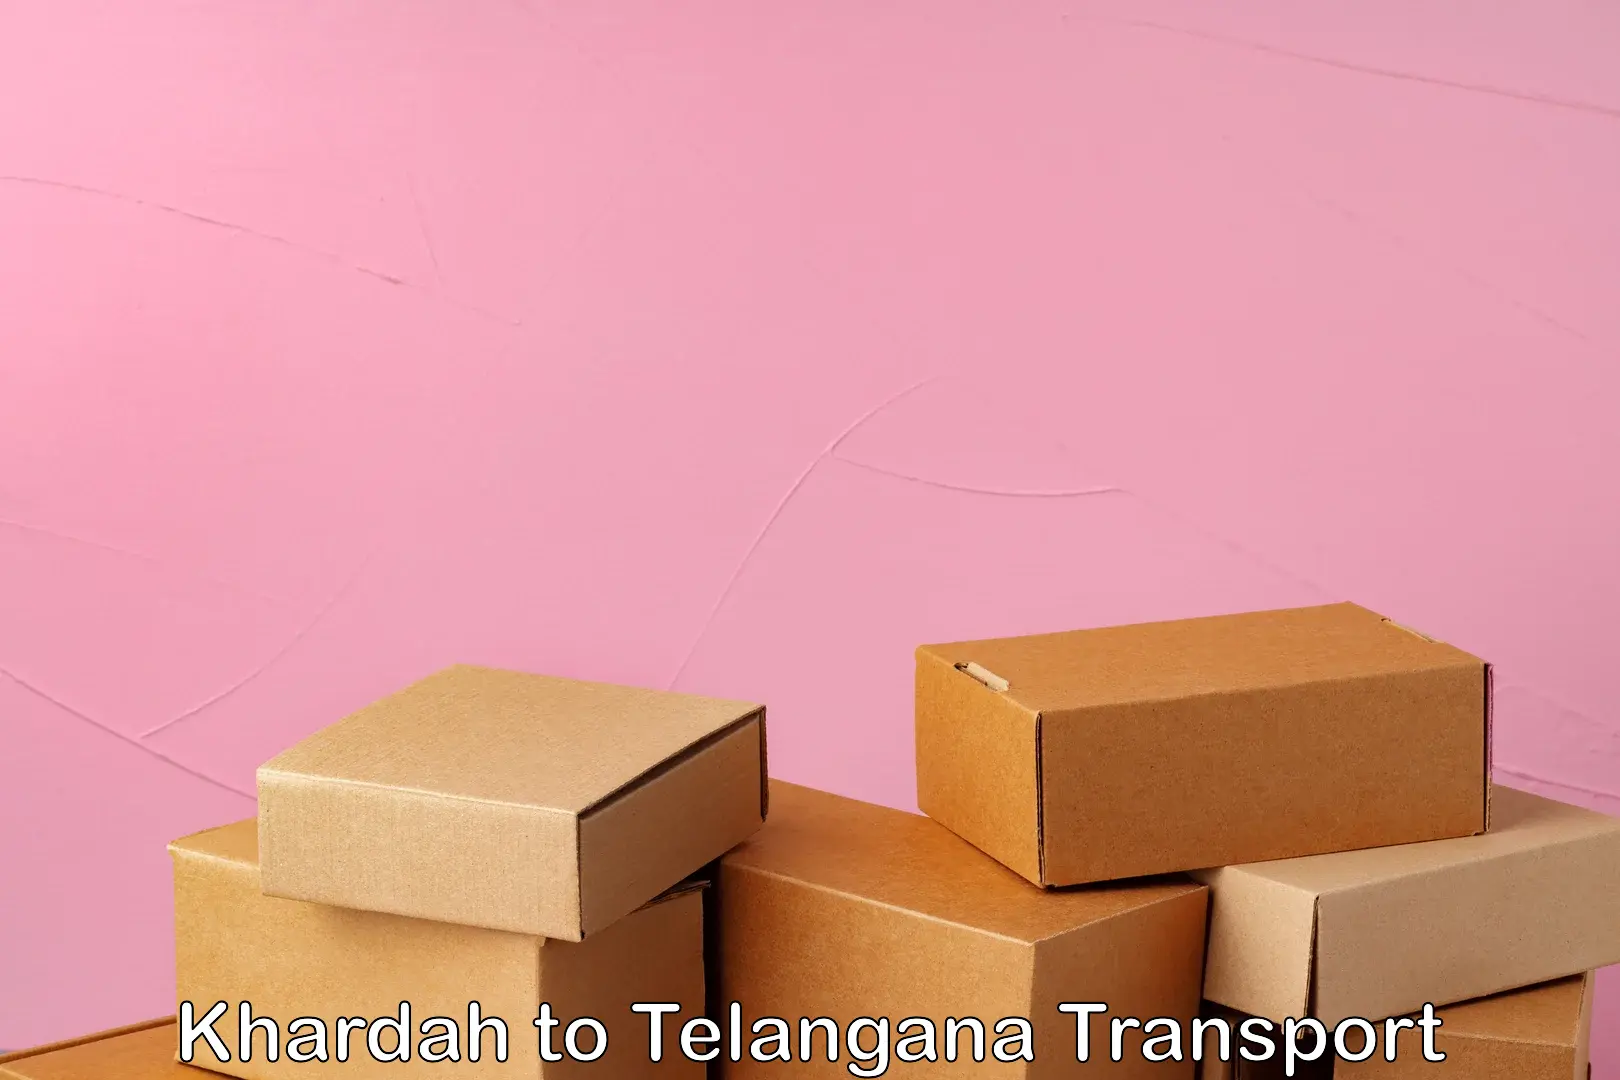 Vehicle transport services Khardah to Telangana